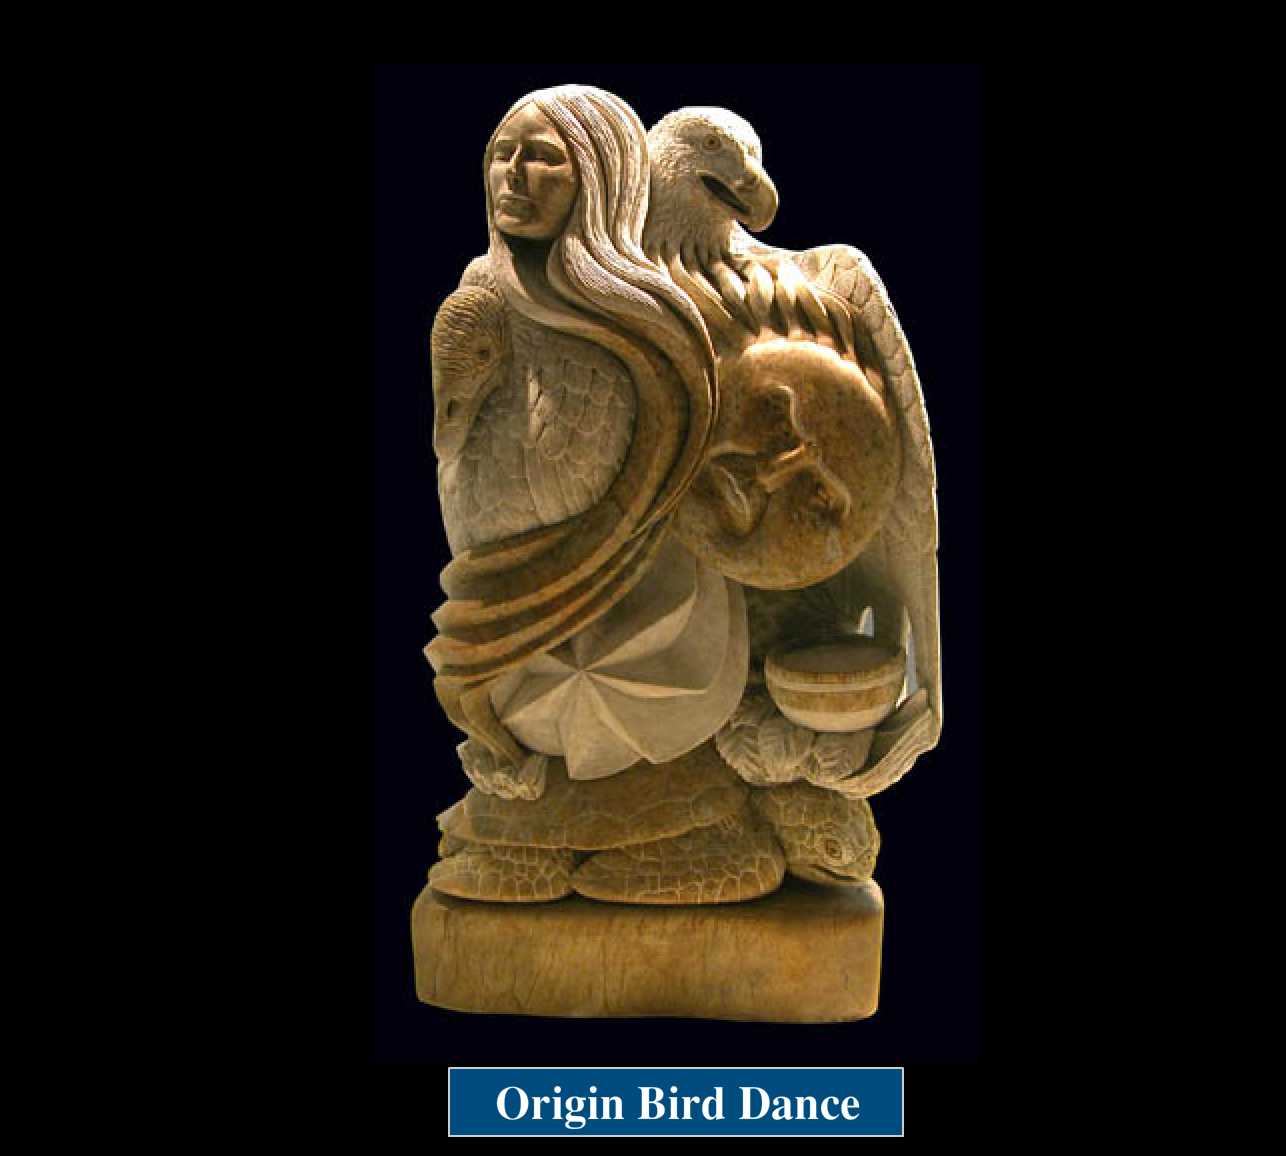 Origin Bird Dance